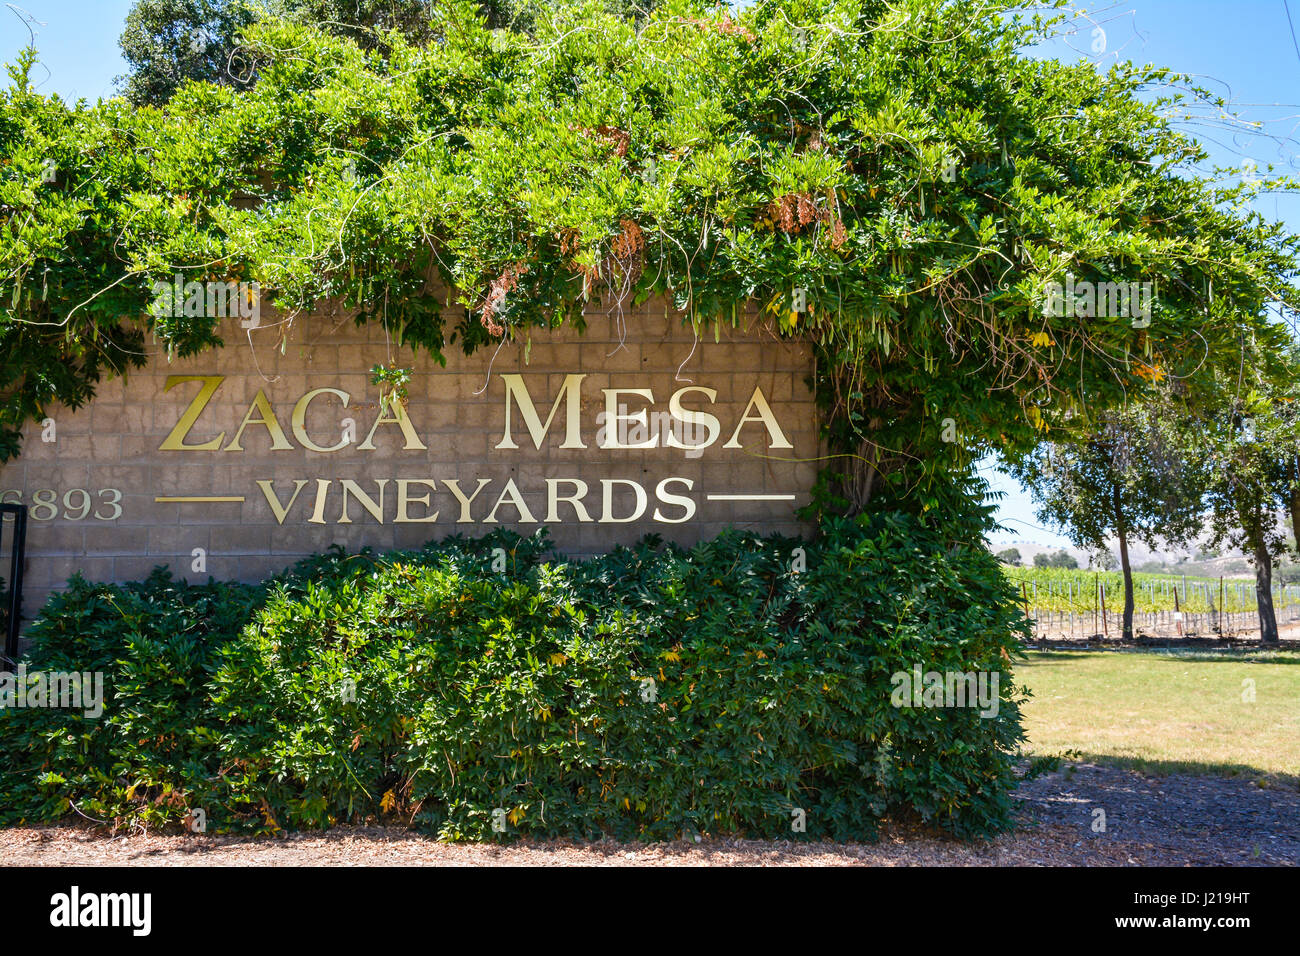 Das Grün überwucherte und verworrene überwältigt dem Ortseingangsschild Zaca Mesa Weinberge in Santa Ynez Tal Wein-Land in Süd-Kalifornien Stockfoto